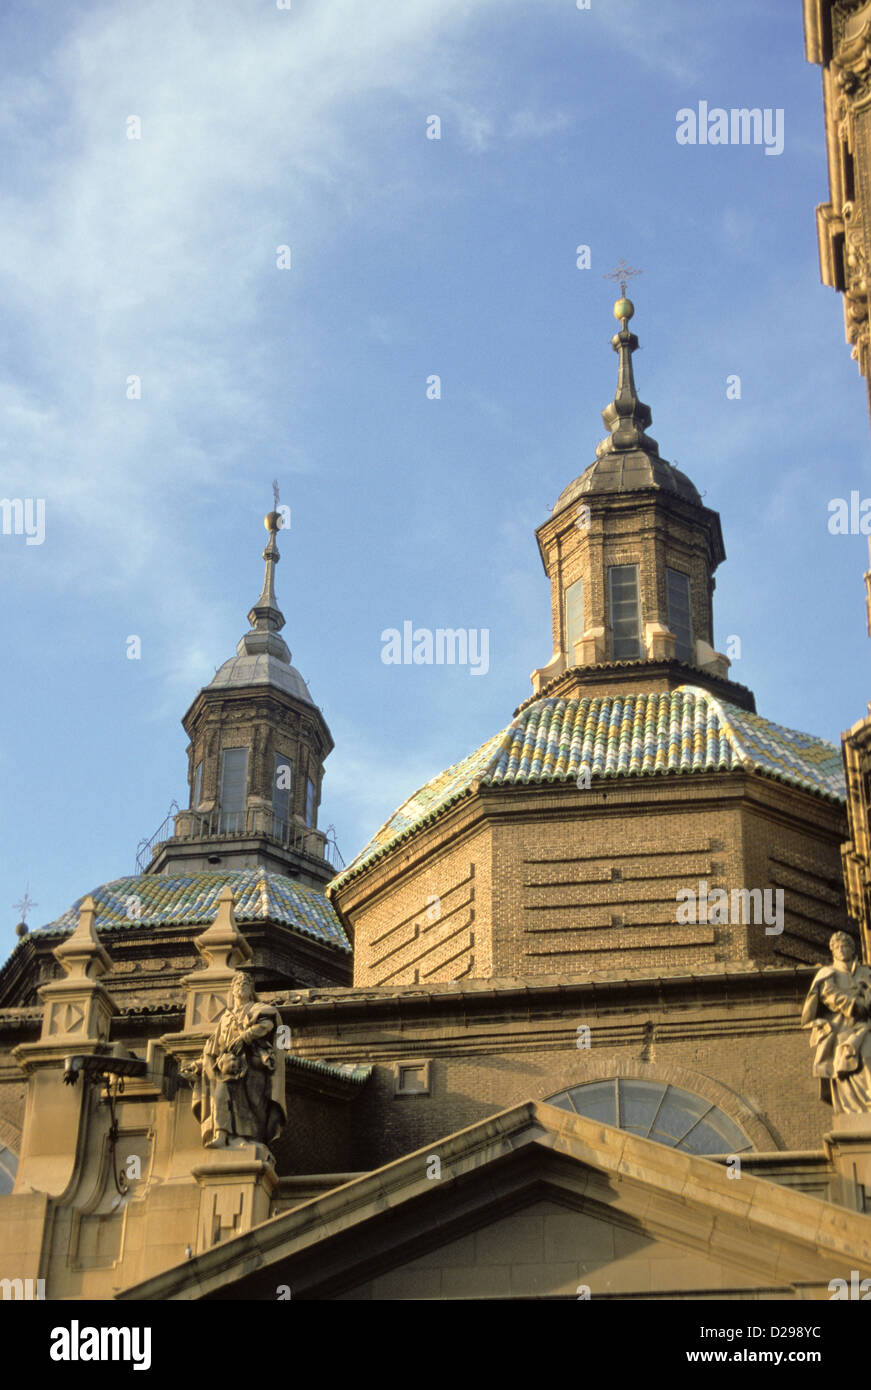 Spagna a Saragozza. Basilica de Nuestra Senora del Pilar. Dettaglio con tetto di tegole. Foto Stock